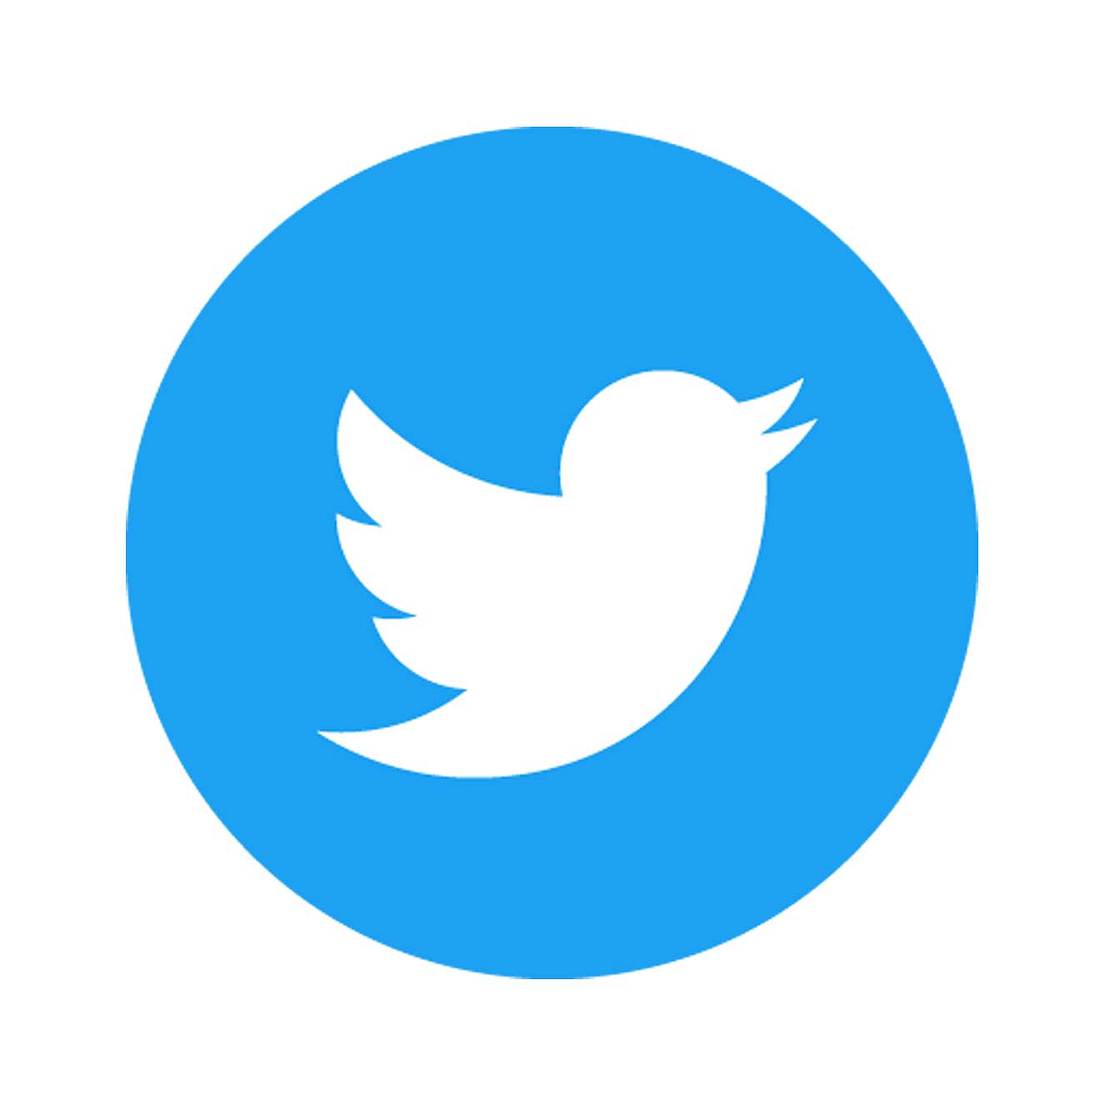 Nachrichtendienst Twitter bekommt Story-Funktion Fleets